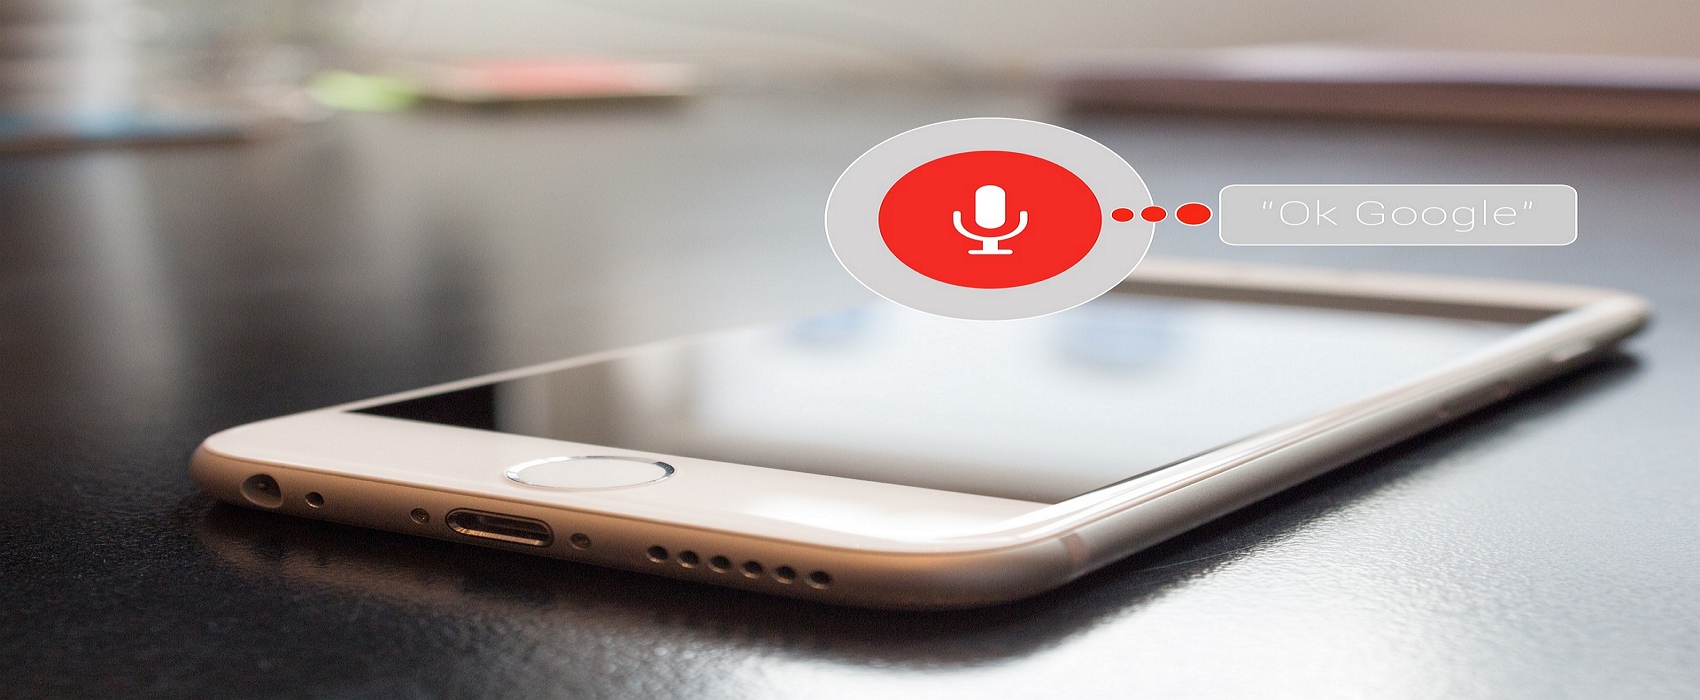 Futura vous dévoile la procédure à suivre pour désactiver l’assistant vocal de Google sur votre smartphone. © Kaufdex from Pixabay.com